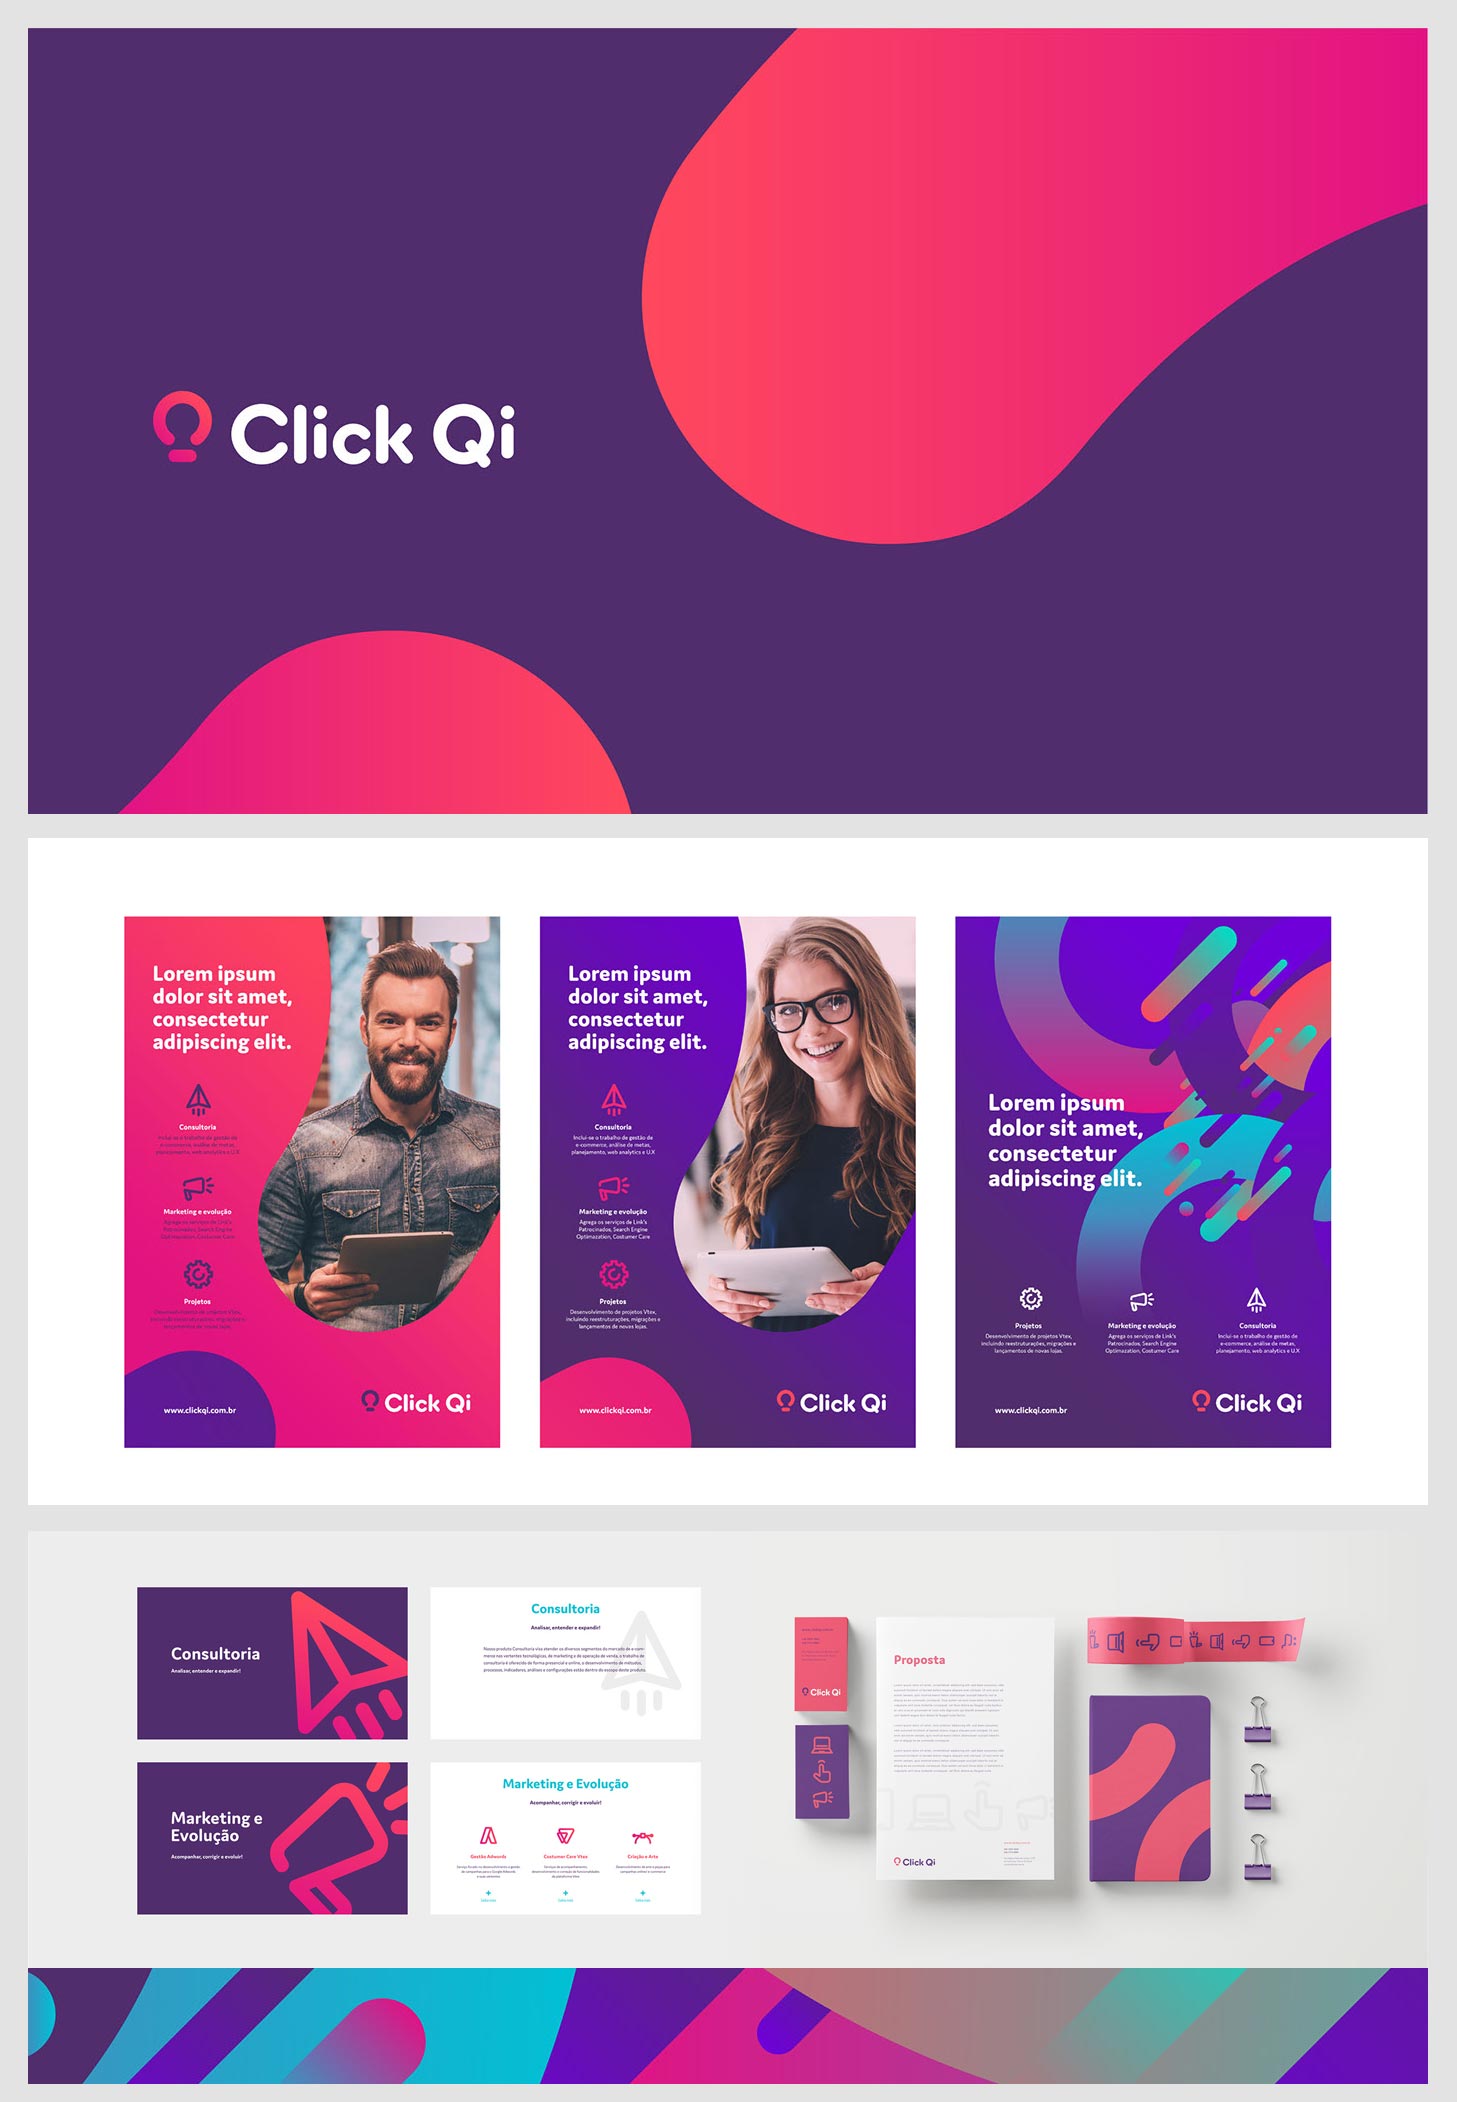 ClickQi - Przykład reklam nowoczesnej marki internetowej